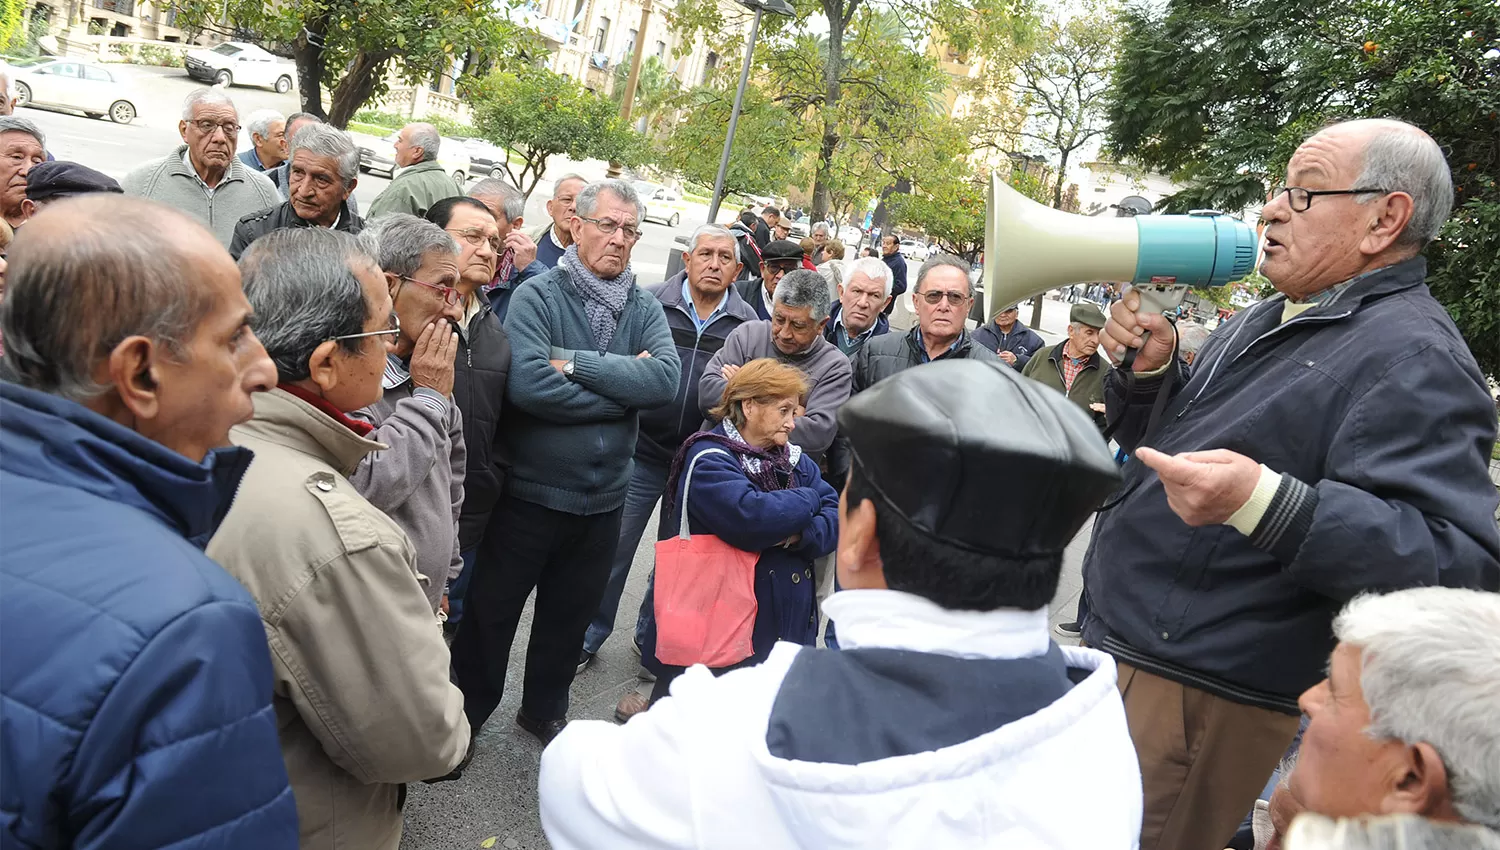 EN LA PLAZA. Un grupo de jubilados durante una protesta frente a la Casa de Gobierno. ARCHIVO LA GACETA / FOTO DE HÉCTOR PERALTA